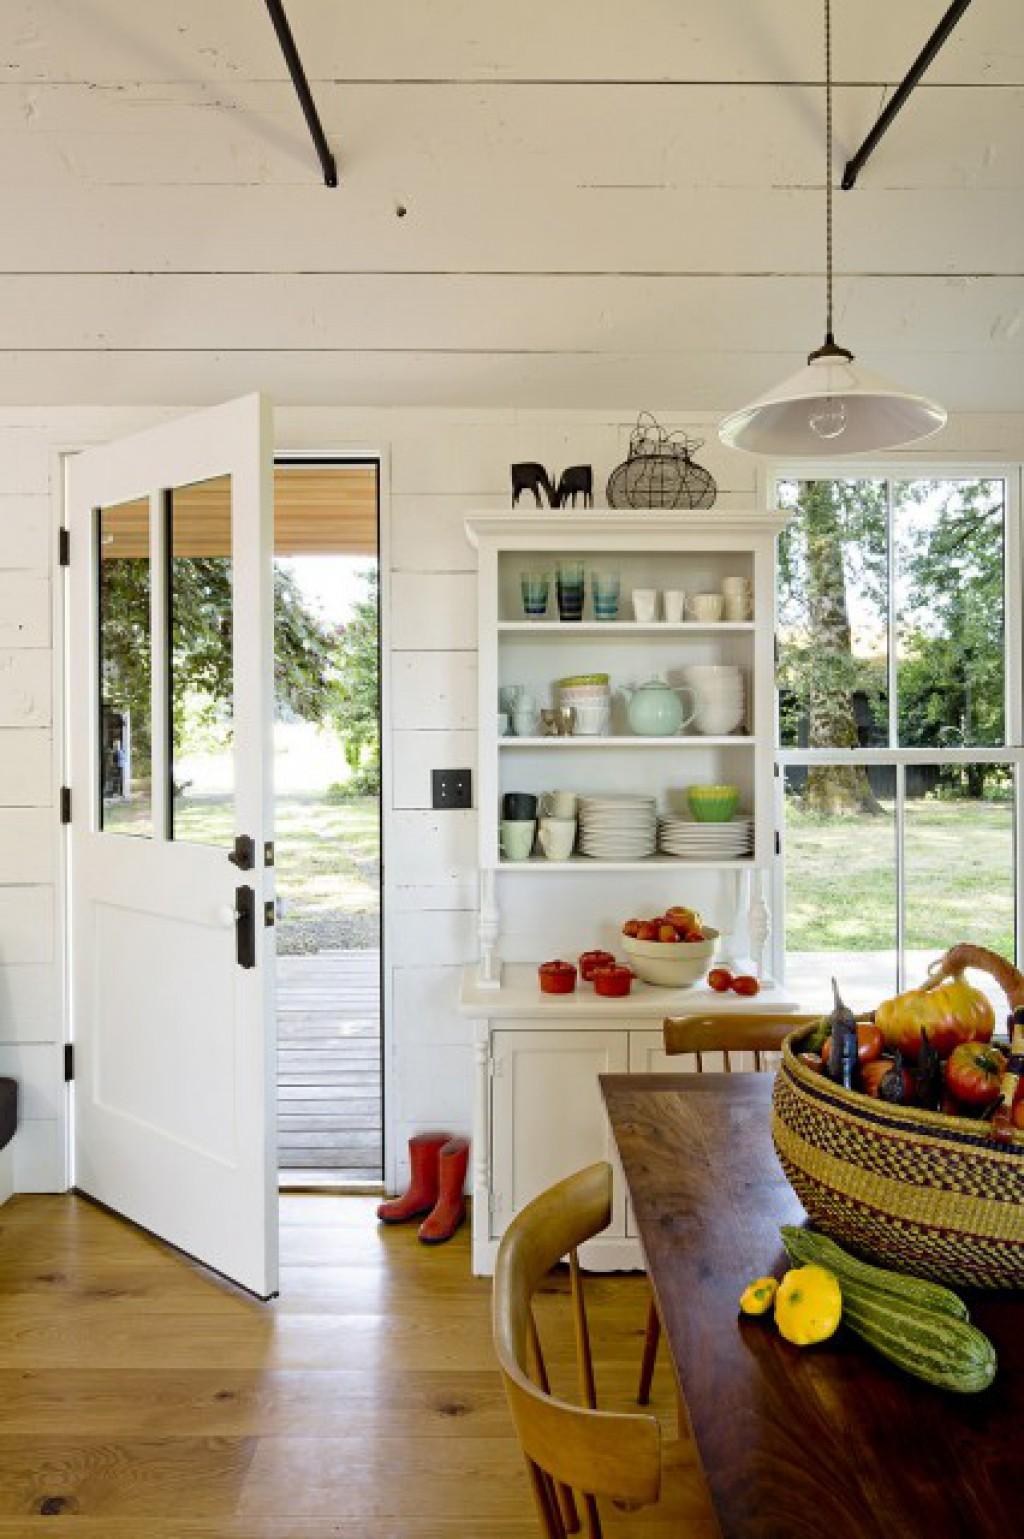 Wohnliche Küche im #tinyhouse #küche #shabbychic ©Lincoln Barbour/Jessica Helgerson Interior Design